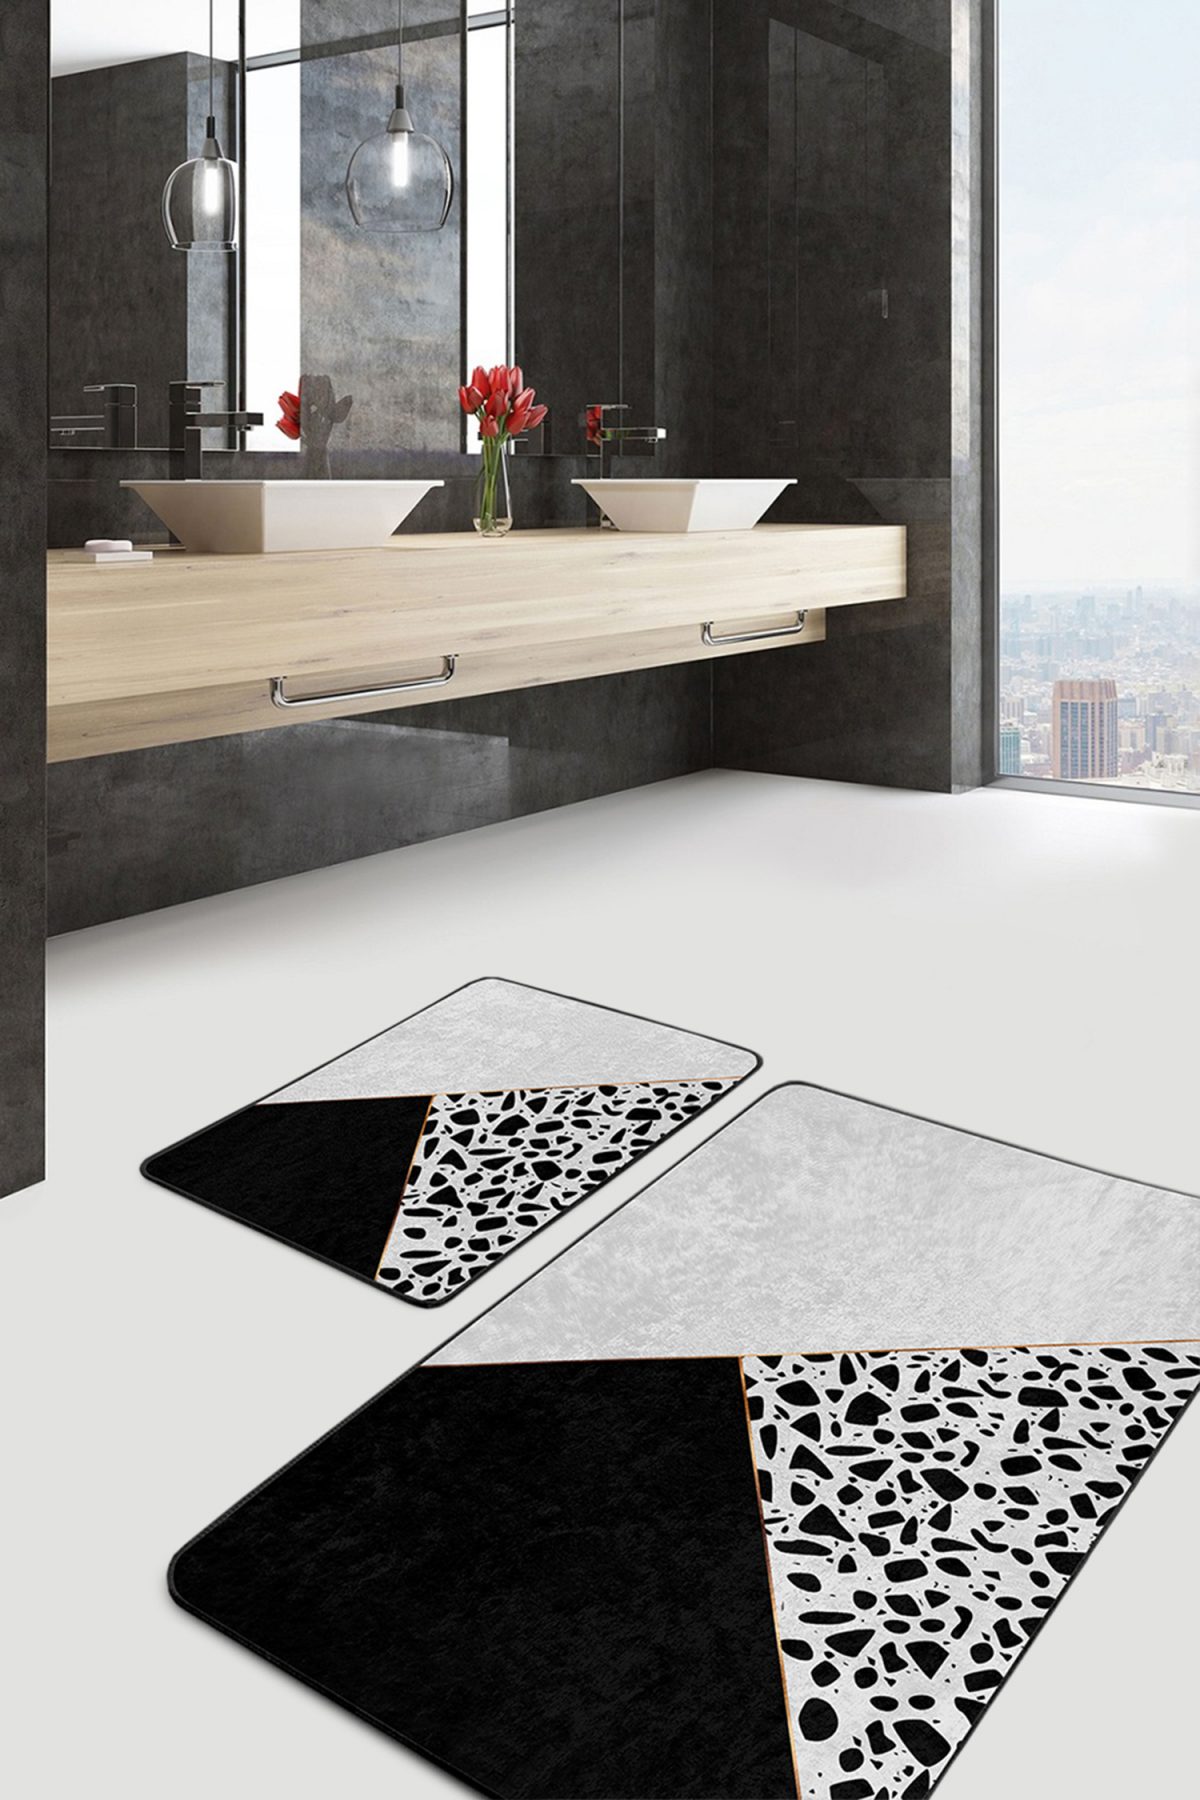 Siyah Beyaz Düz Renkli Taş Tasarımlı 2'li Kaymaz Tabanlı Banyo & Mutfak Paspas Takımı Realhomes